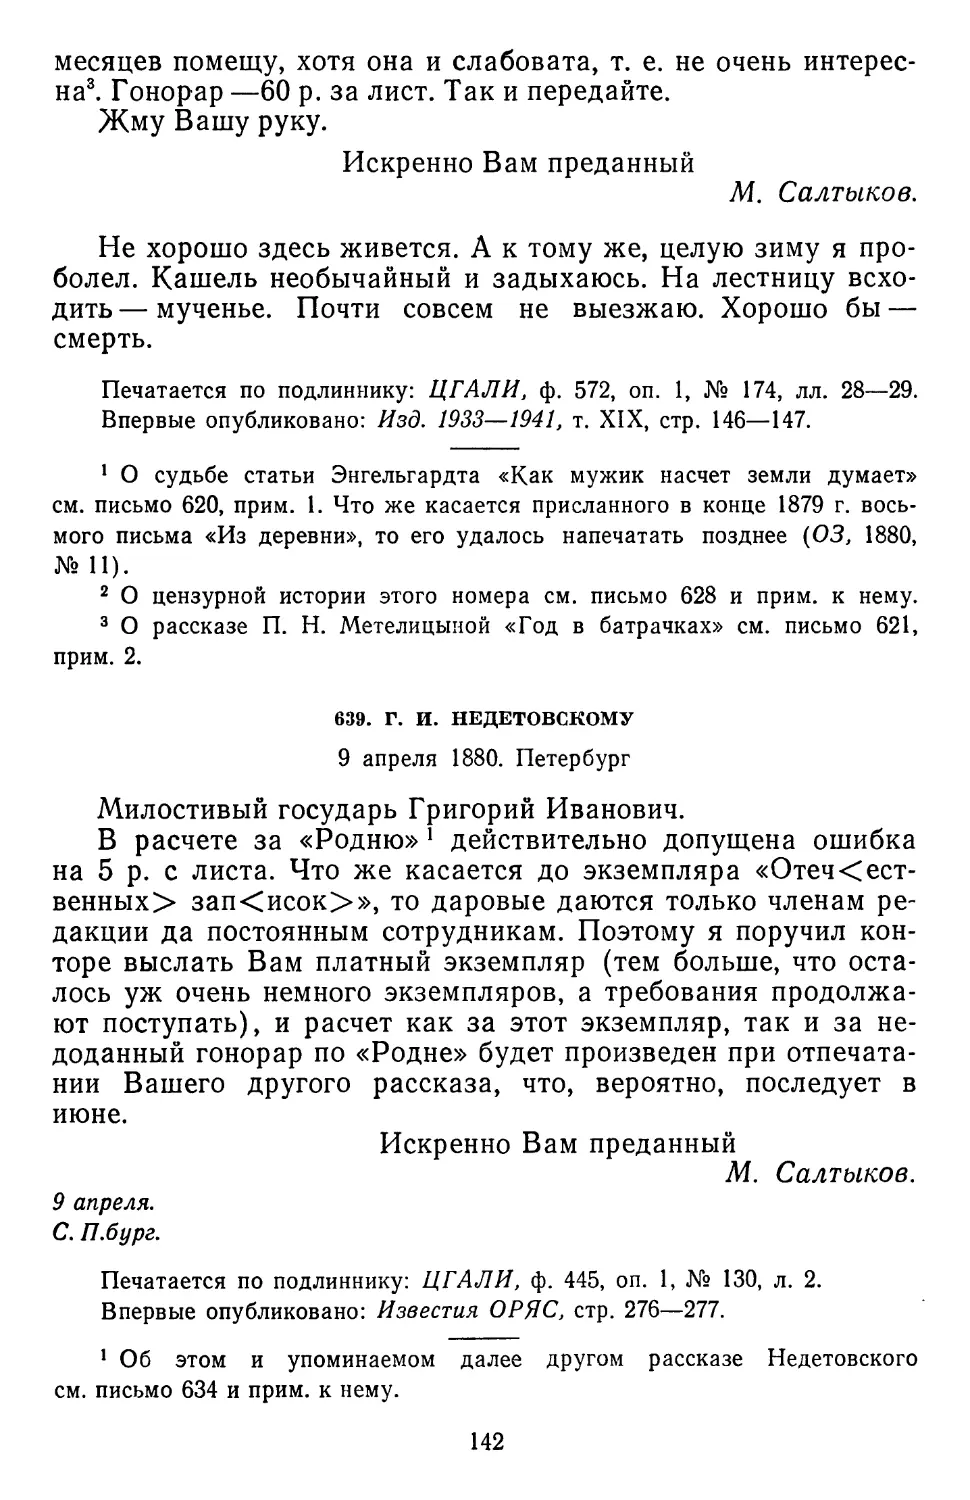 639.Г. И. Недетовскому. 9 апреля 1880.Петербург